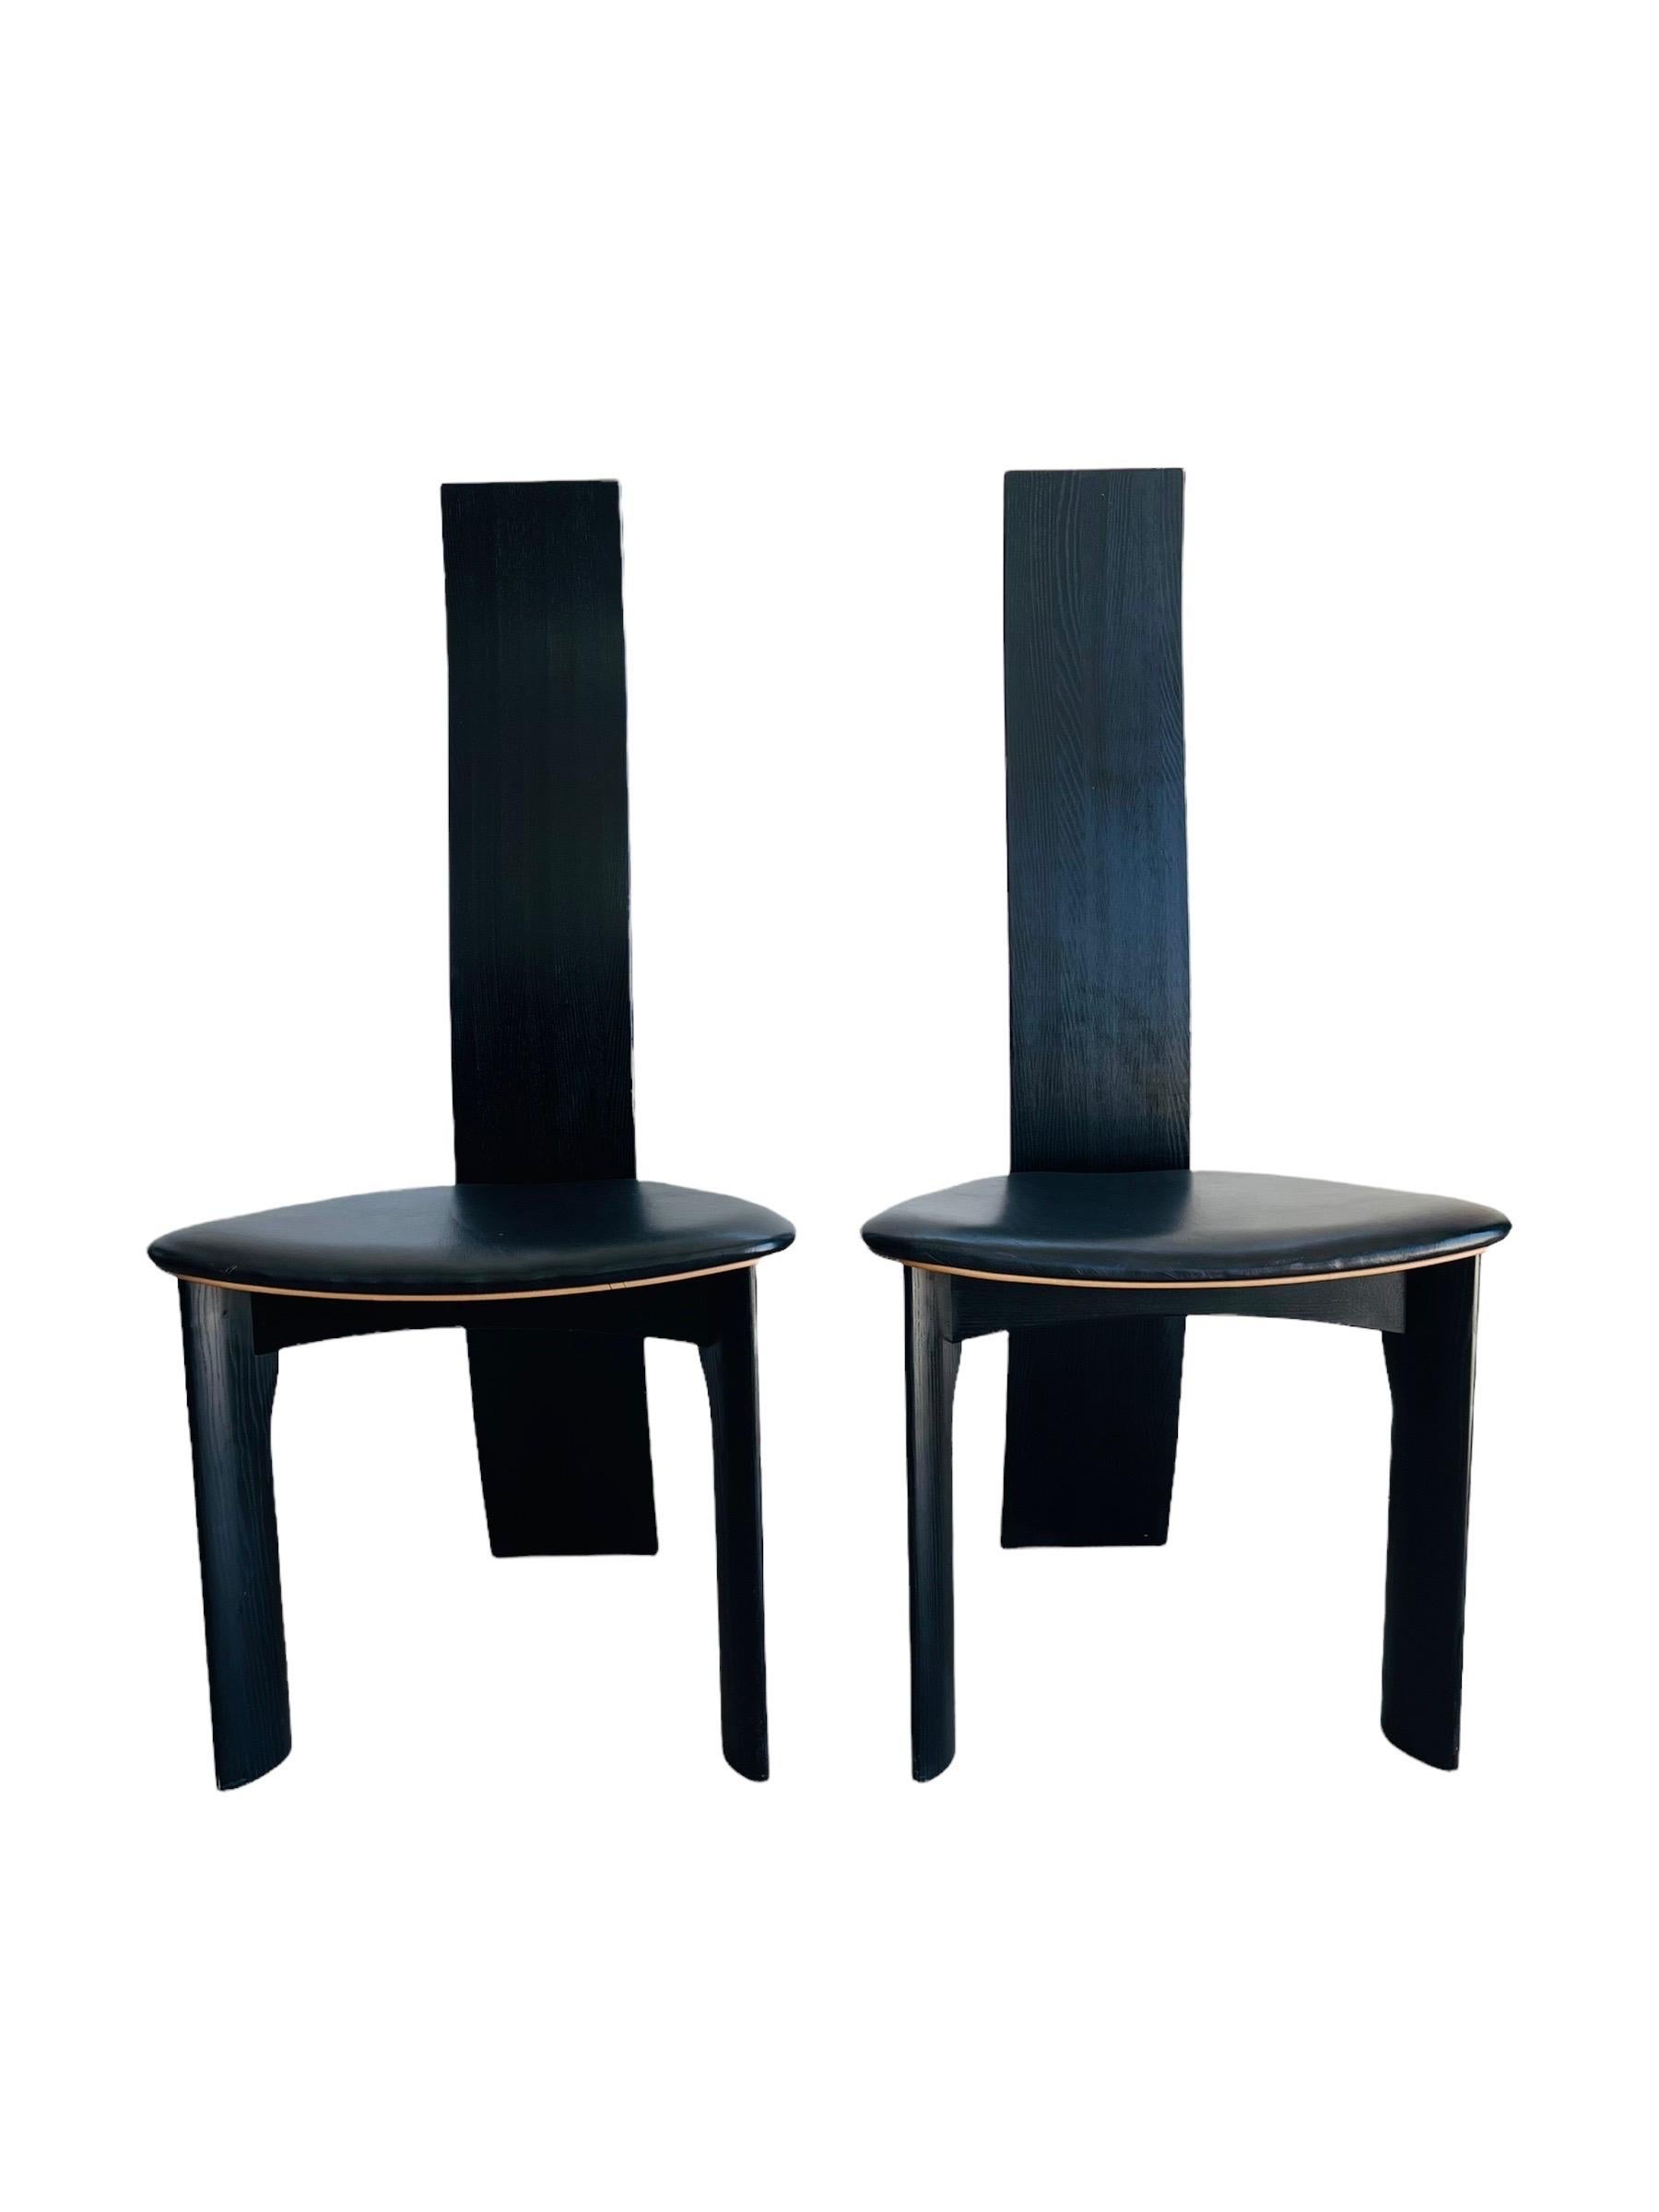 Ein Satz von sechs dänischen ebonisierten Esszimmerstühlen. Entworfen 1970 von Bob und Dries van den Bergh für Tranekær Mobler. Die Stühle sind in gutem Vintage-Zustand mit normaler Abnutzung, die dem Alter und dem Gebrauch entspricht. 

Maße: B